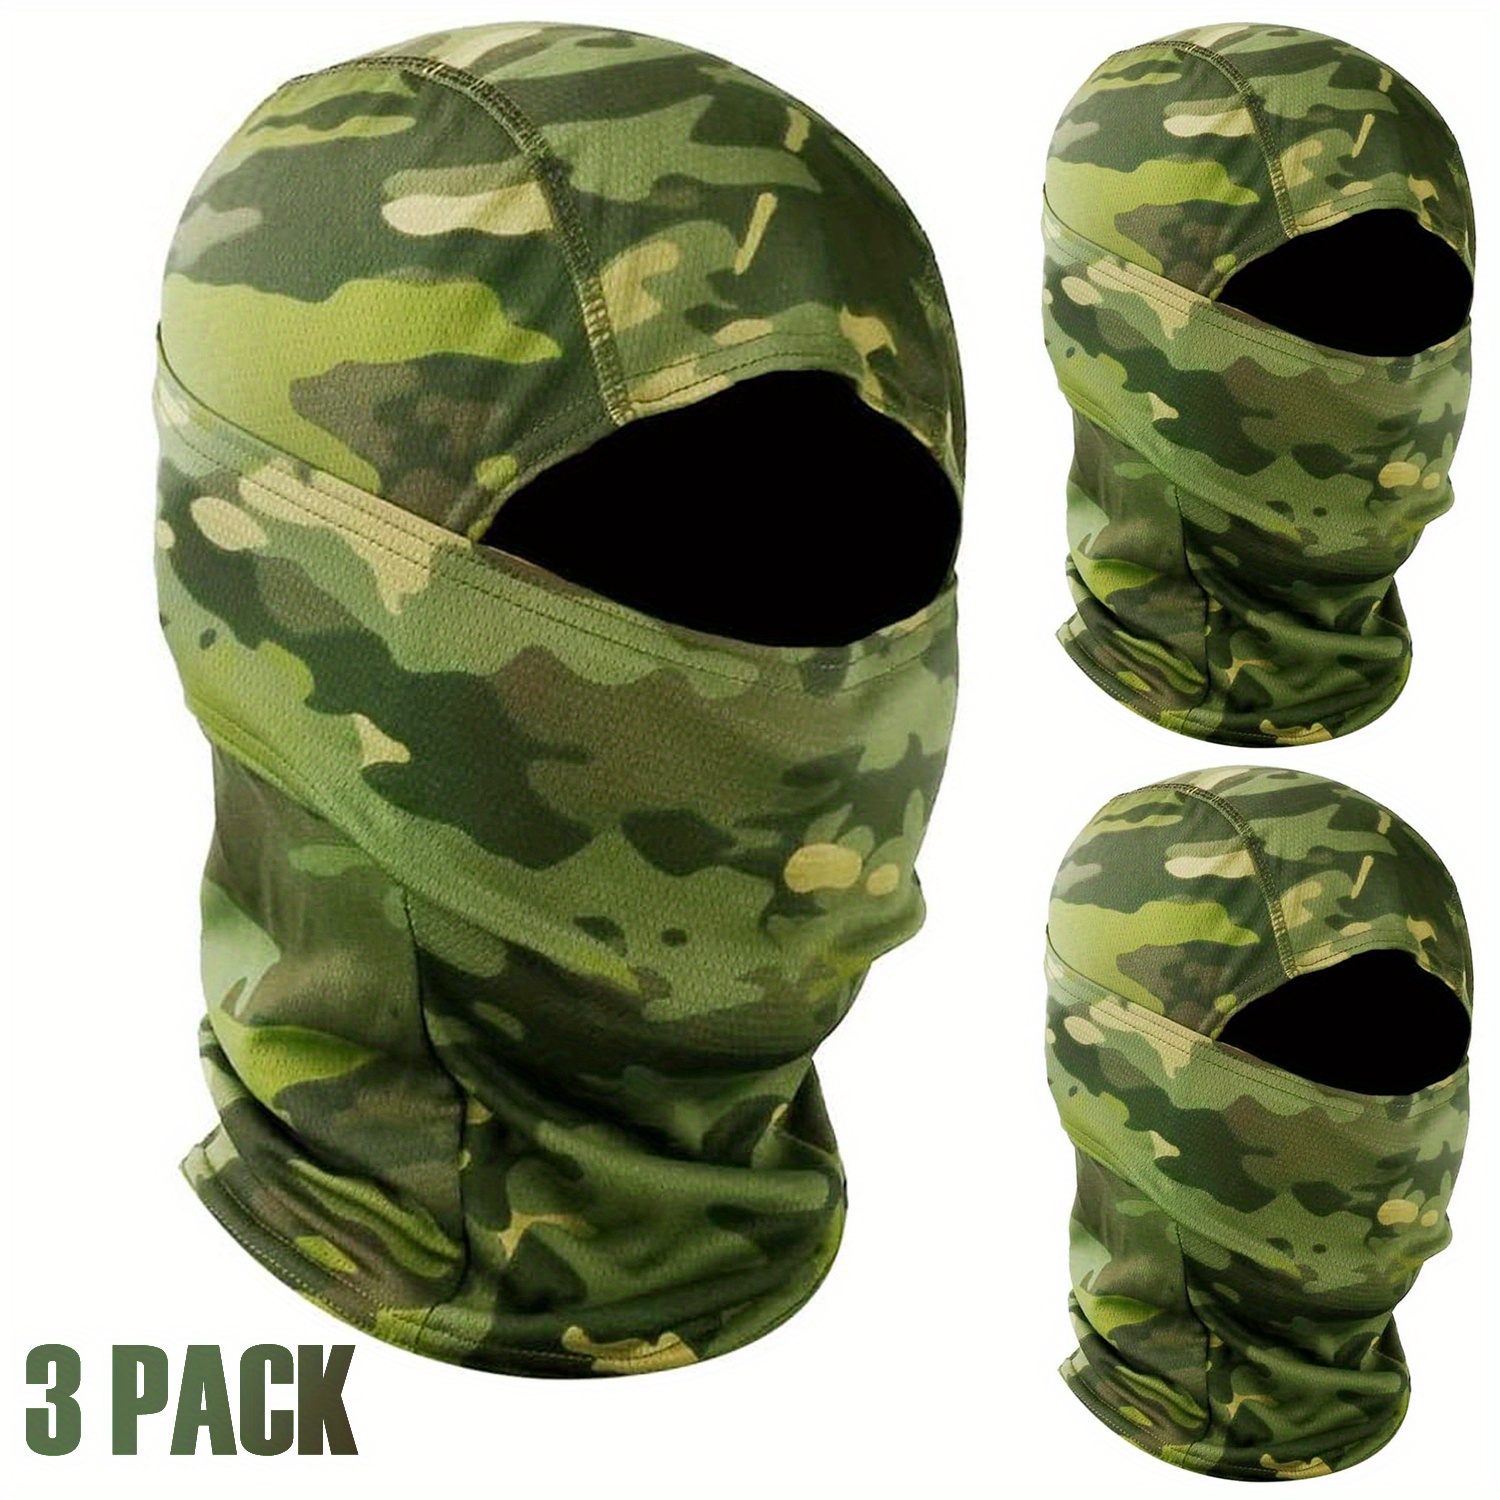 Viworld Military Camo Face Mask Bandana Balaclava Hood Headwear